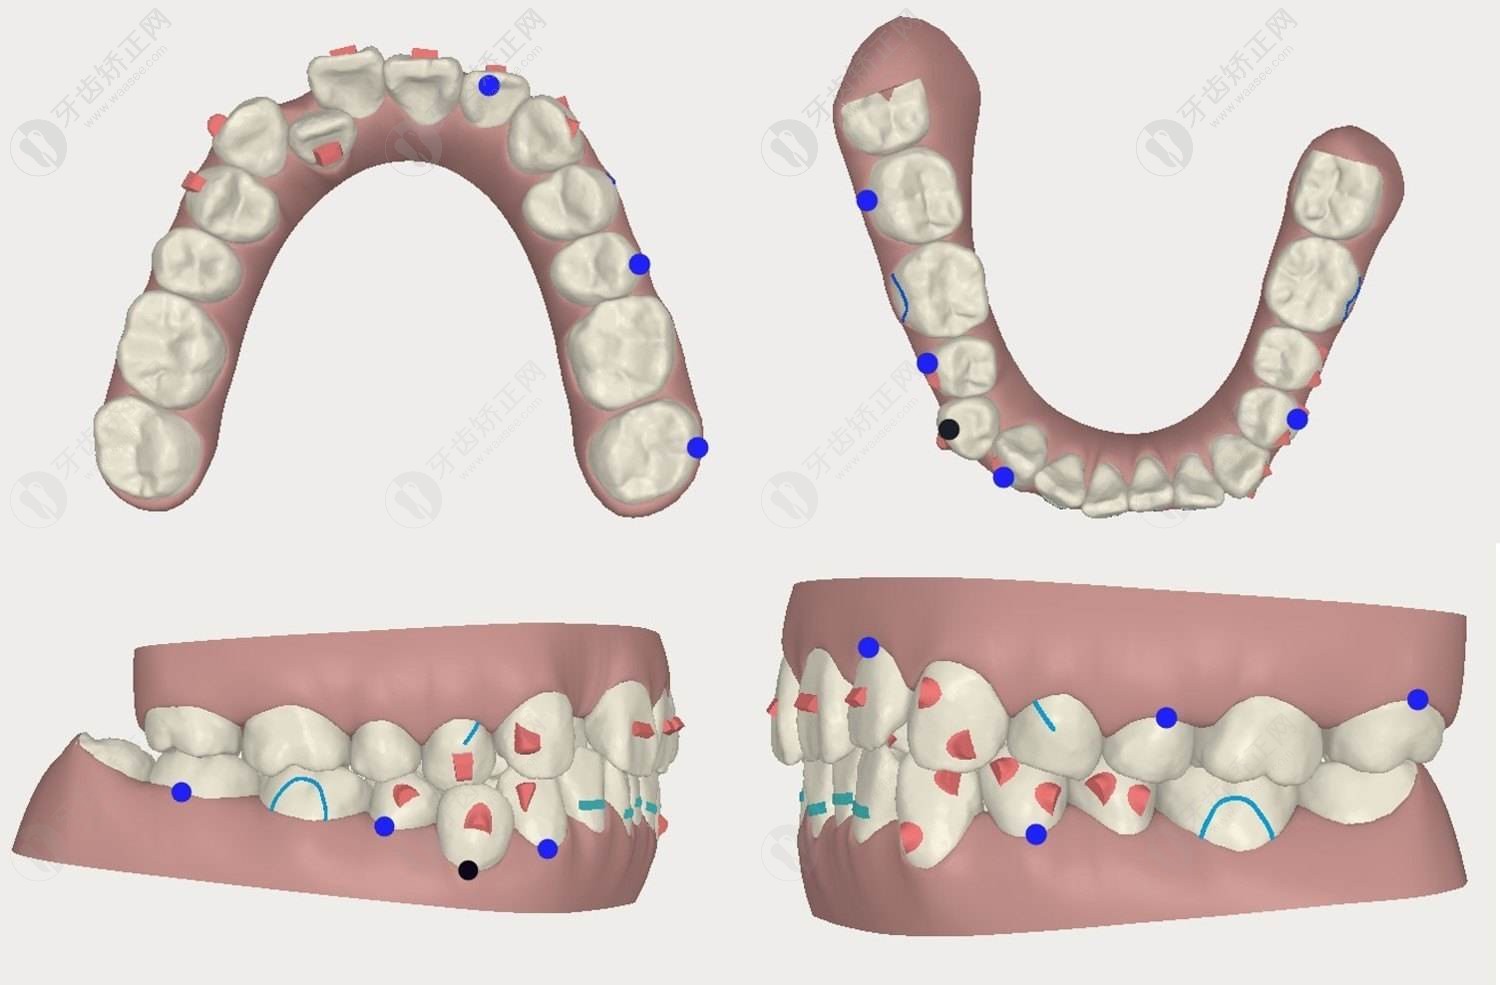 隐形矫正的牙齿移动过程